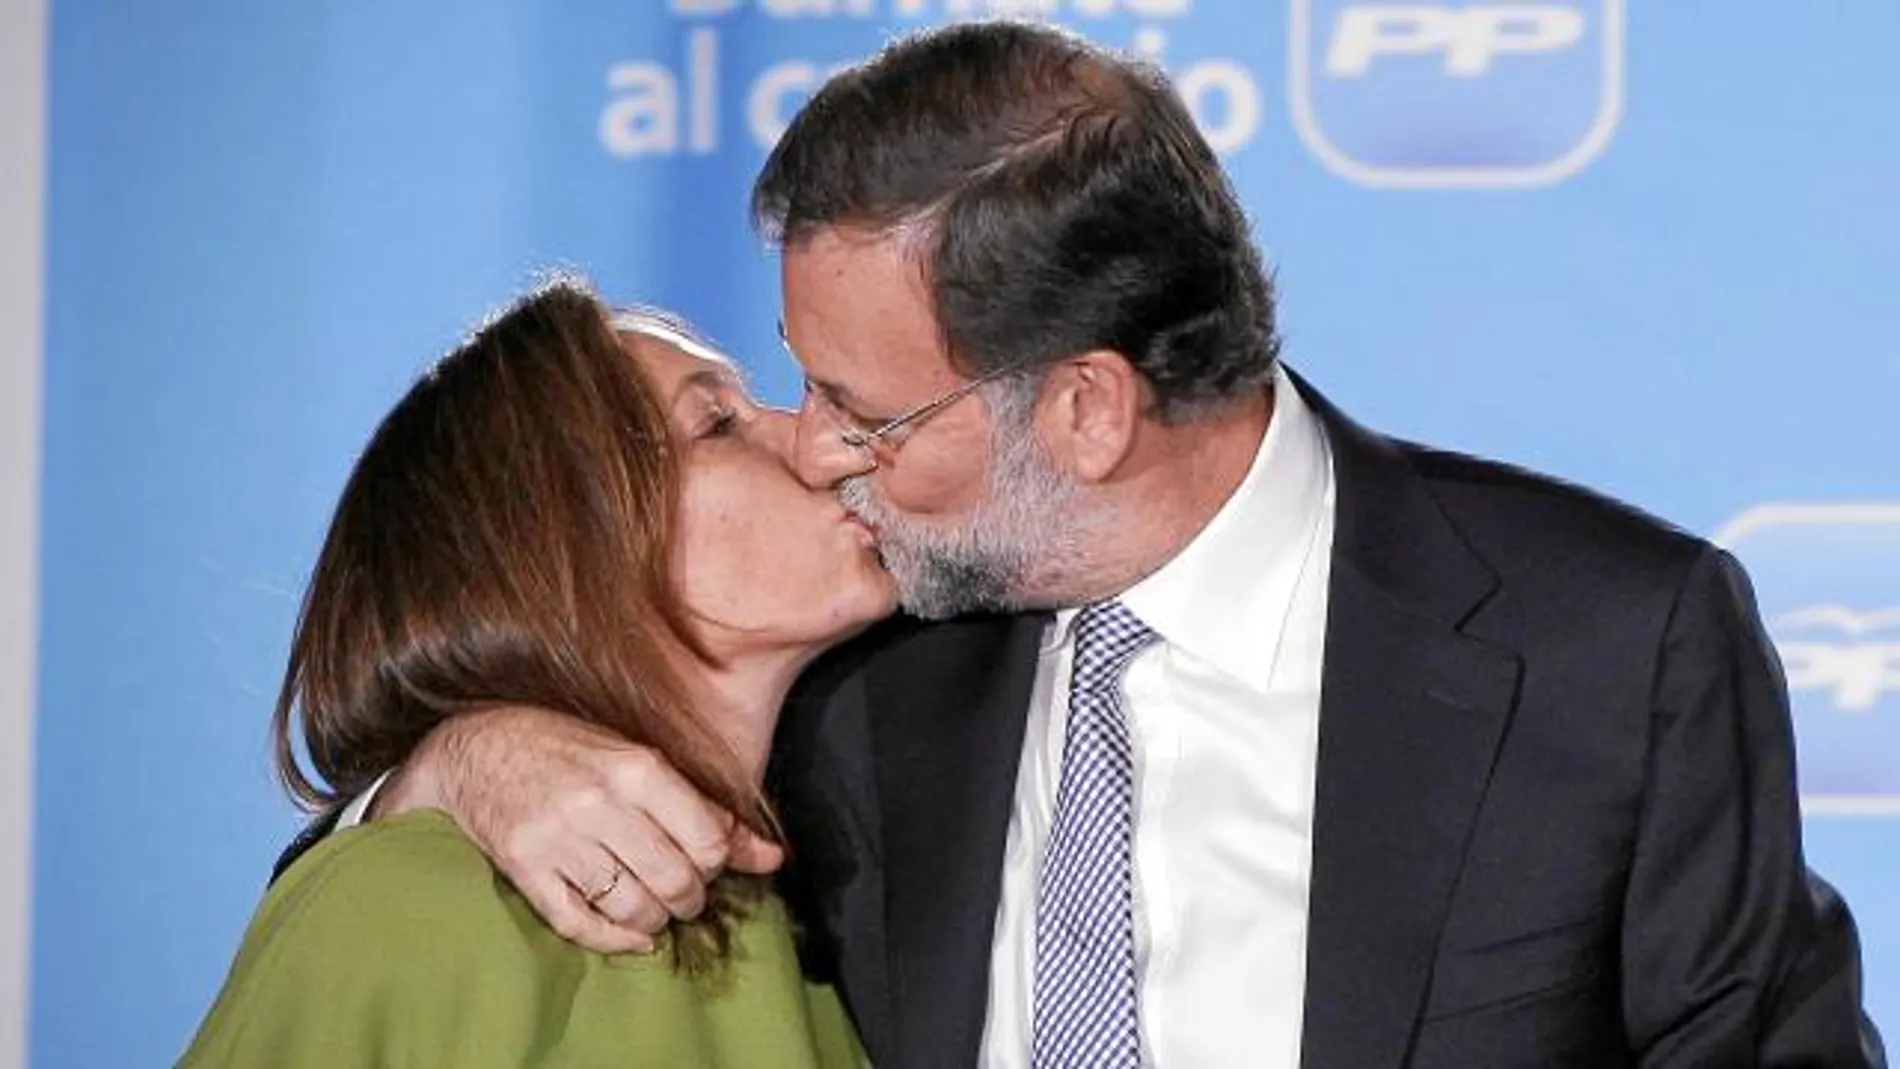 Mariano rajoy y su mujer, Elvira Fernández (Viri) protagonizaron ayer el beso del año al salir al balcón de Génova para celebrar los resultados